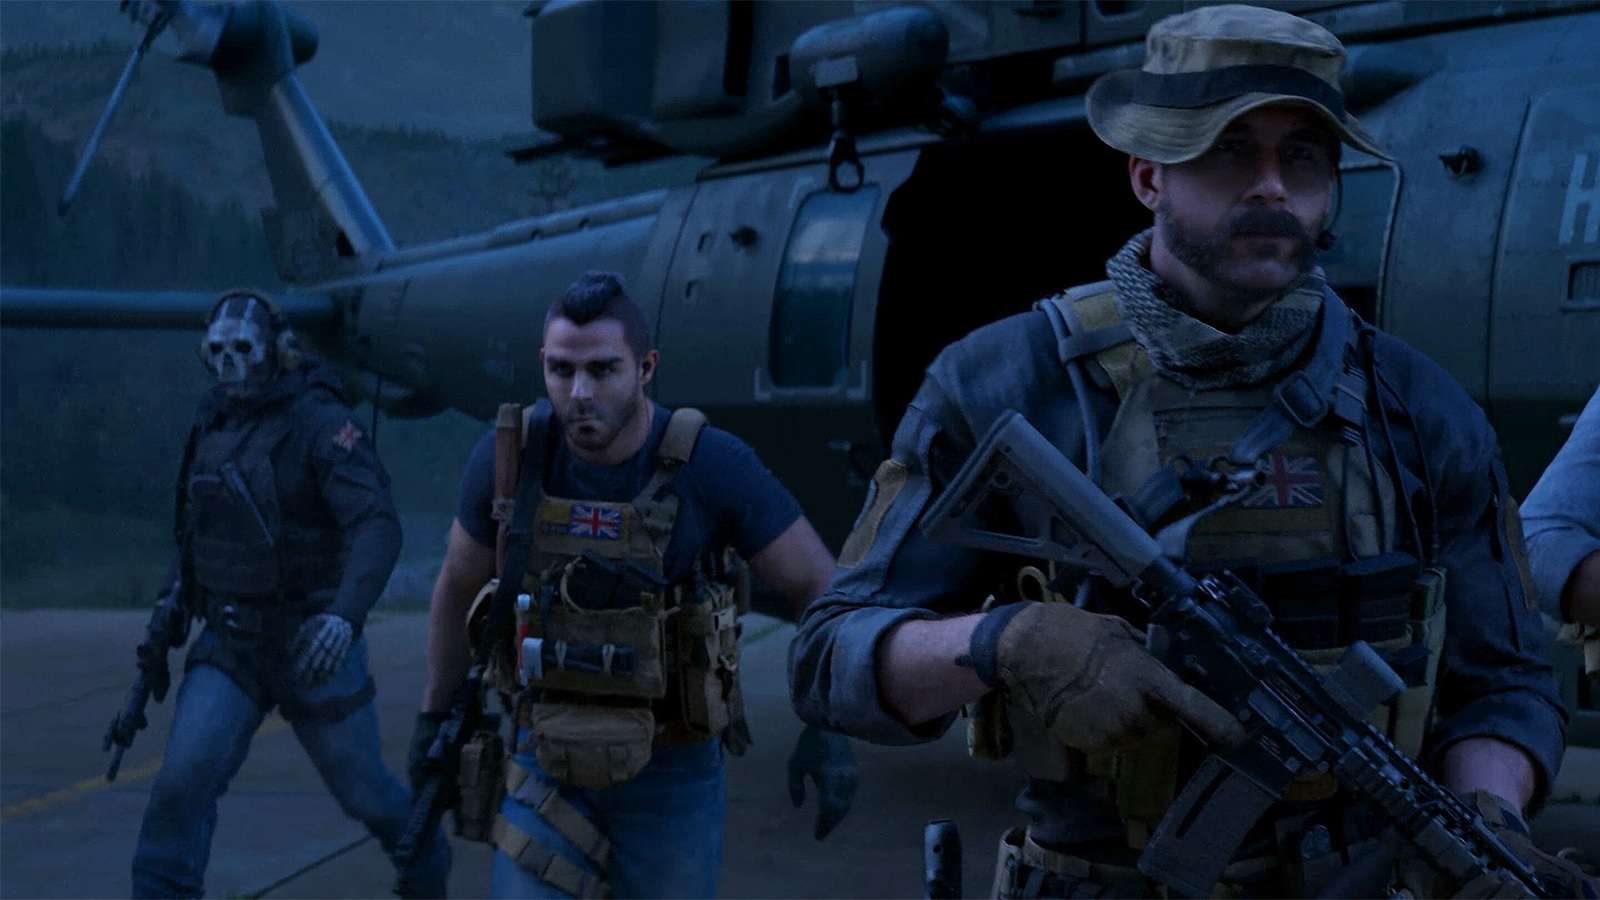 Groupe de 3 personnages de Modern Warfare 3 devant un hélicoptère